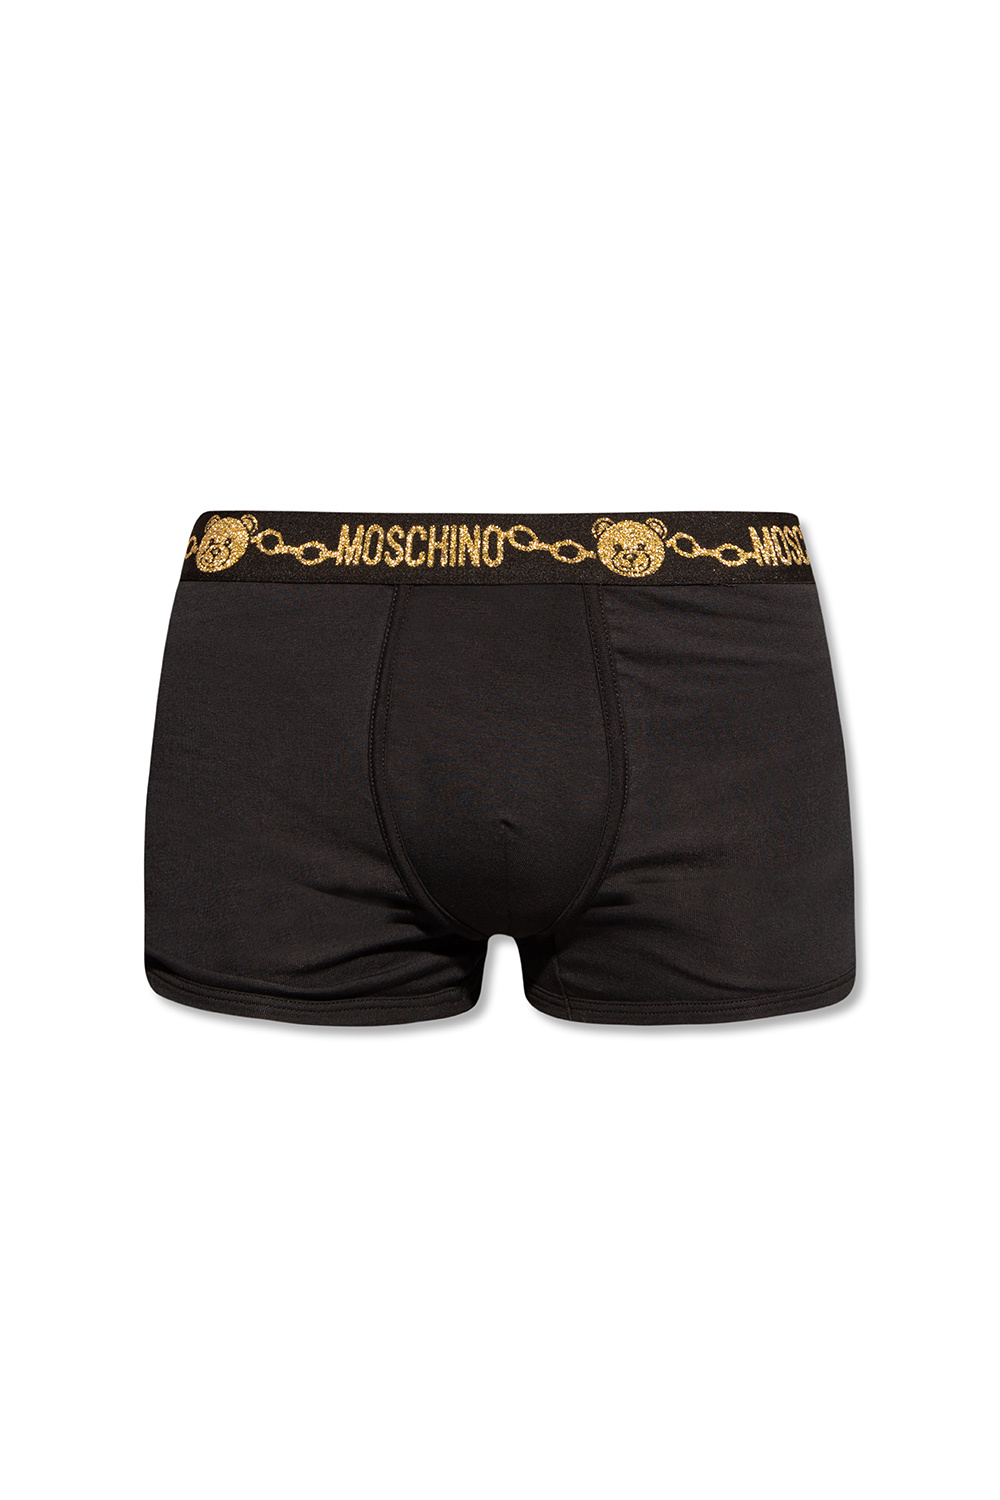 Moschino Underwear Moschino Underwear Logo Set Of 2 Boxer Shorts Grey/black